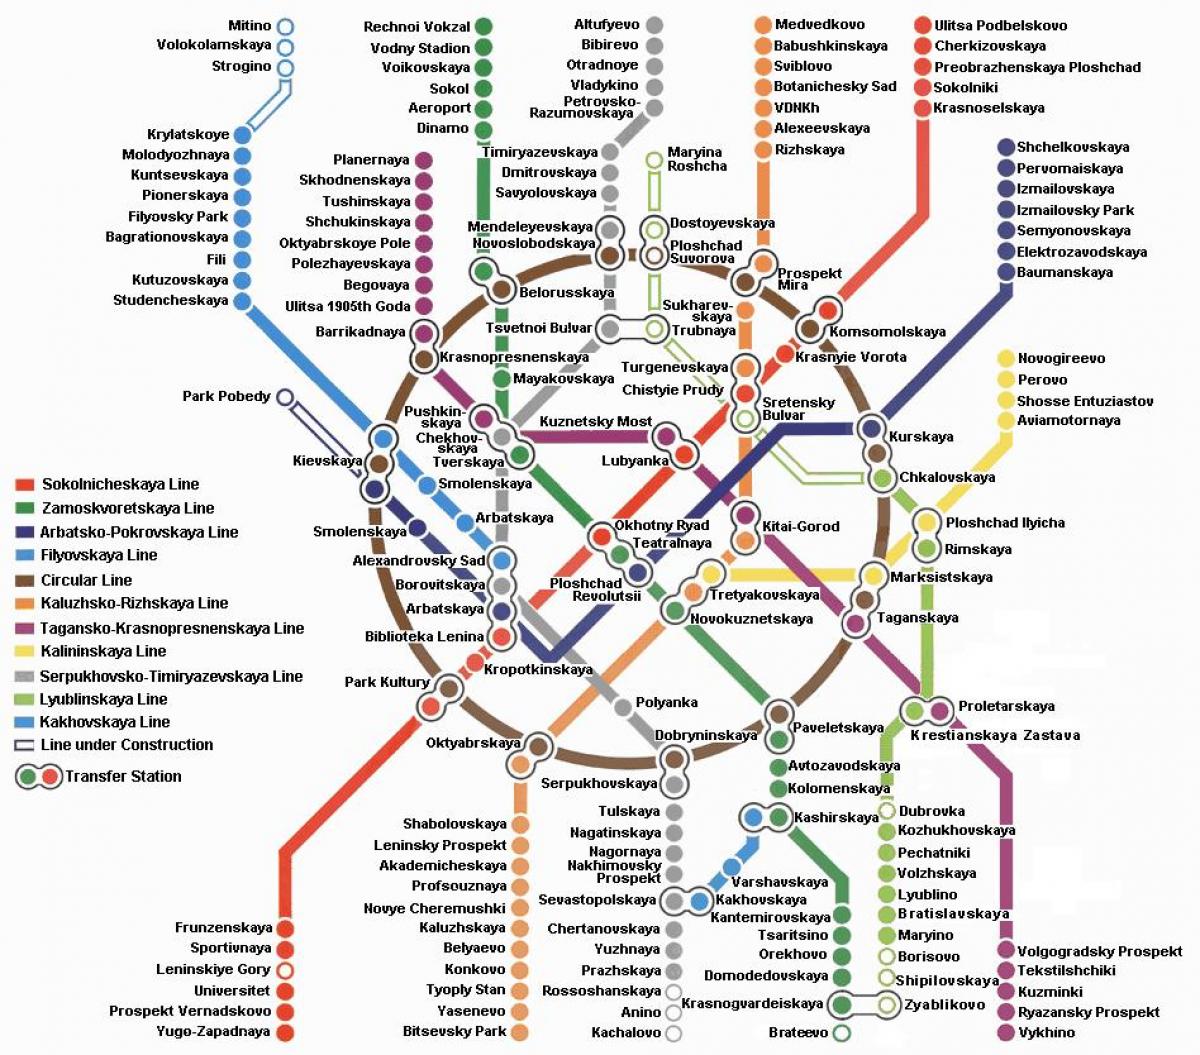 Mapa do metro de moscovo em inglês